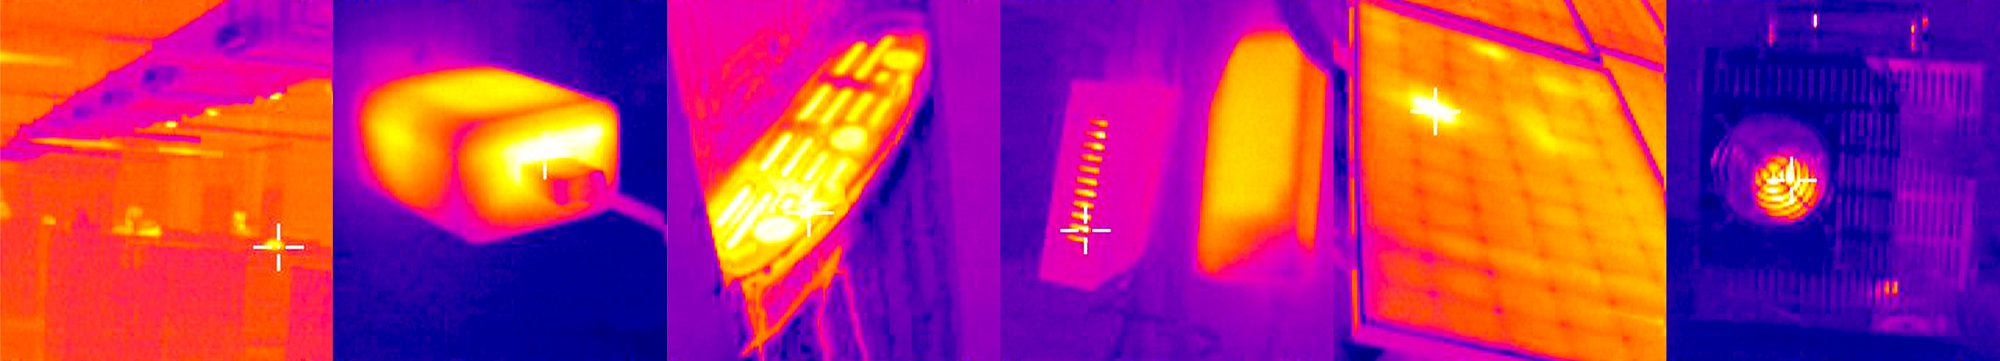 Heat Sensing Camera